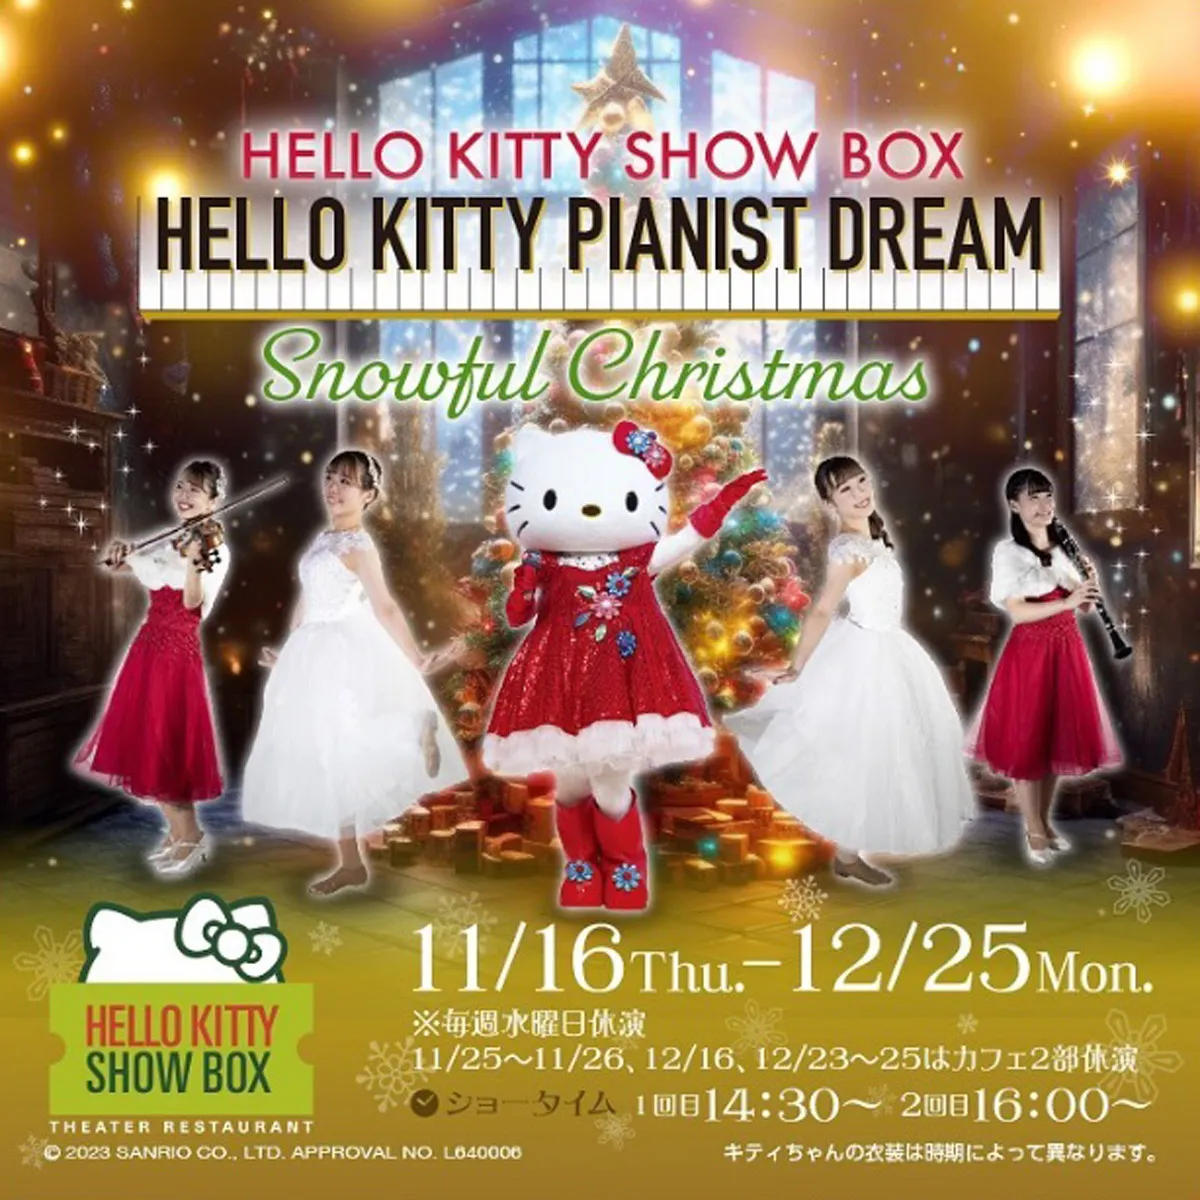 クリスマスカフェ公演「Snowful Christmas」ハローキティショーボックス